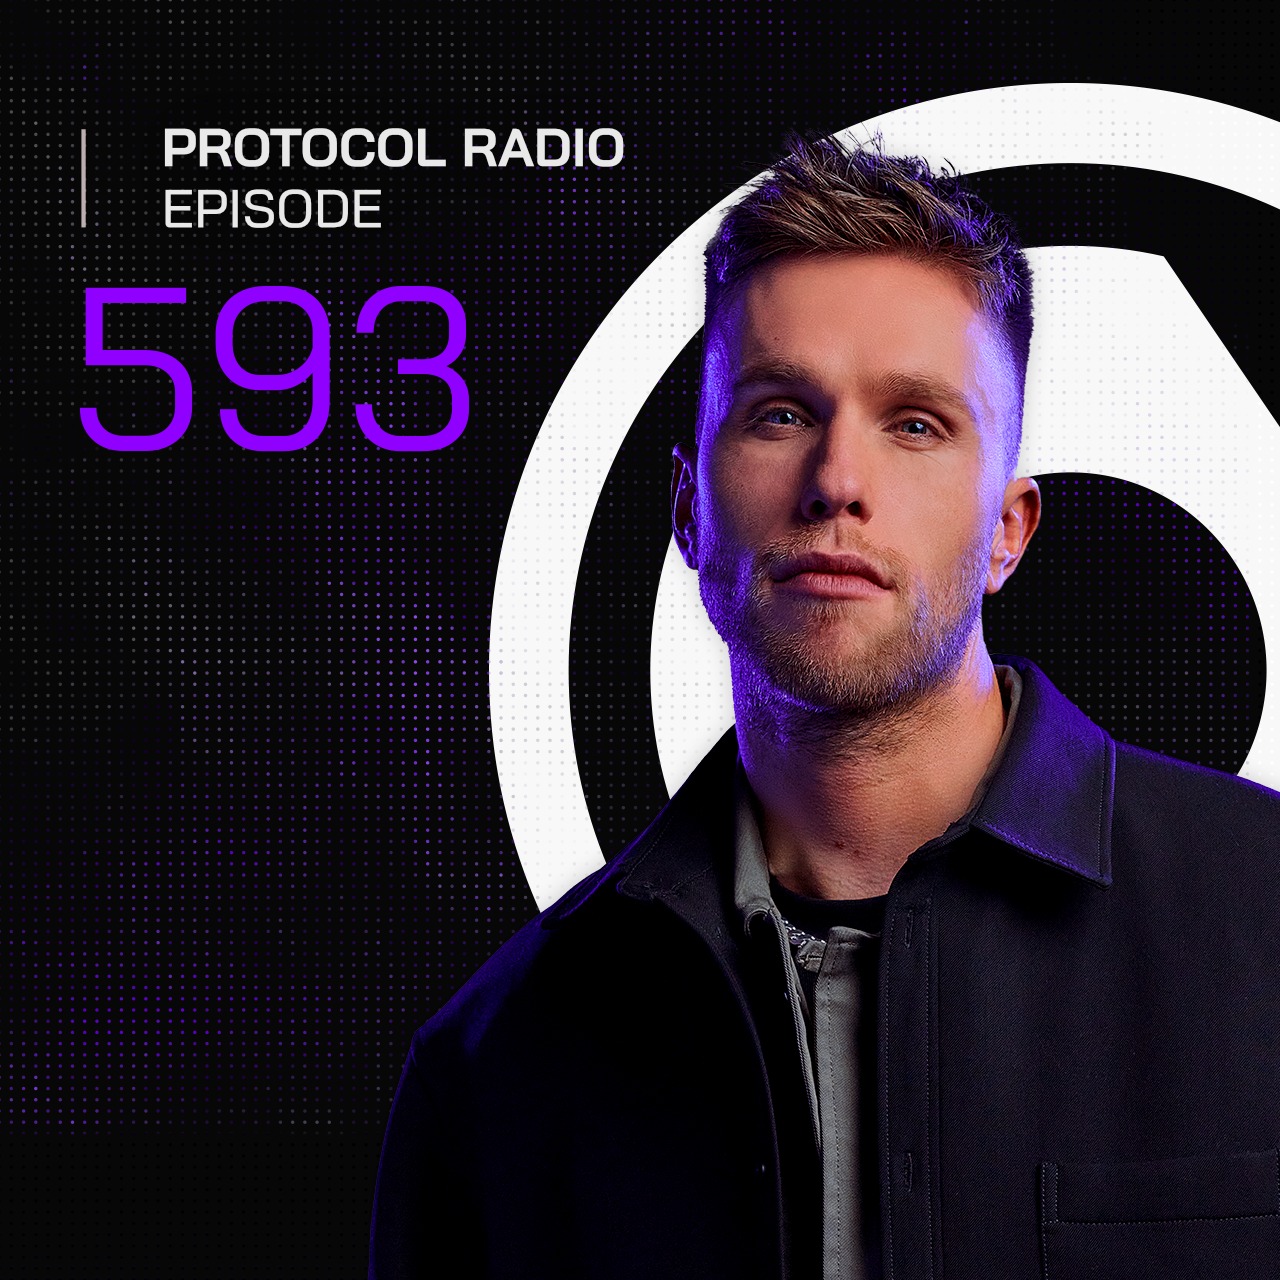 Protocol Radio #593